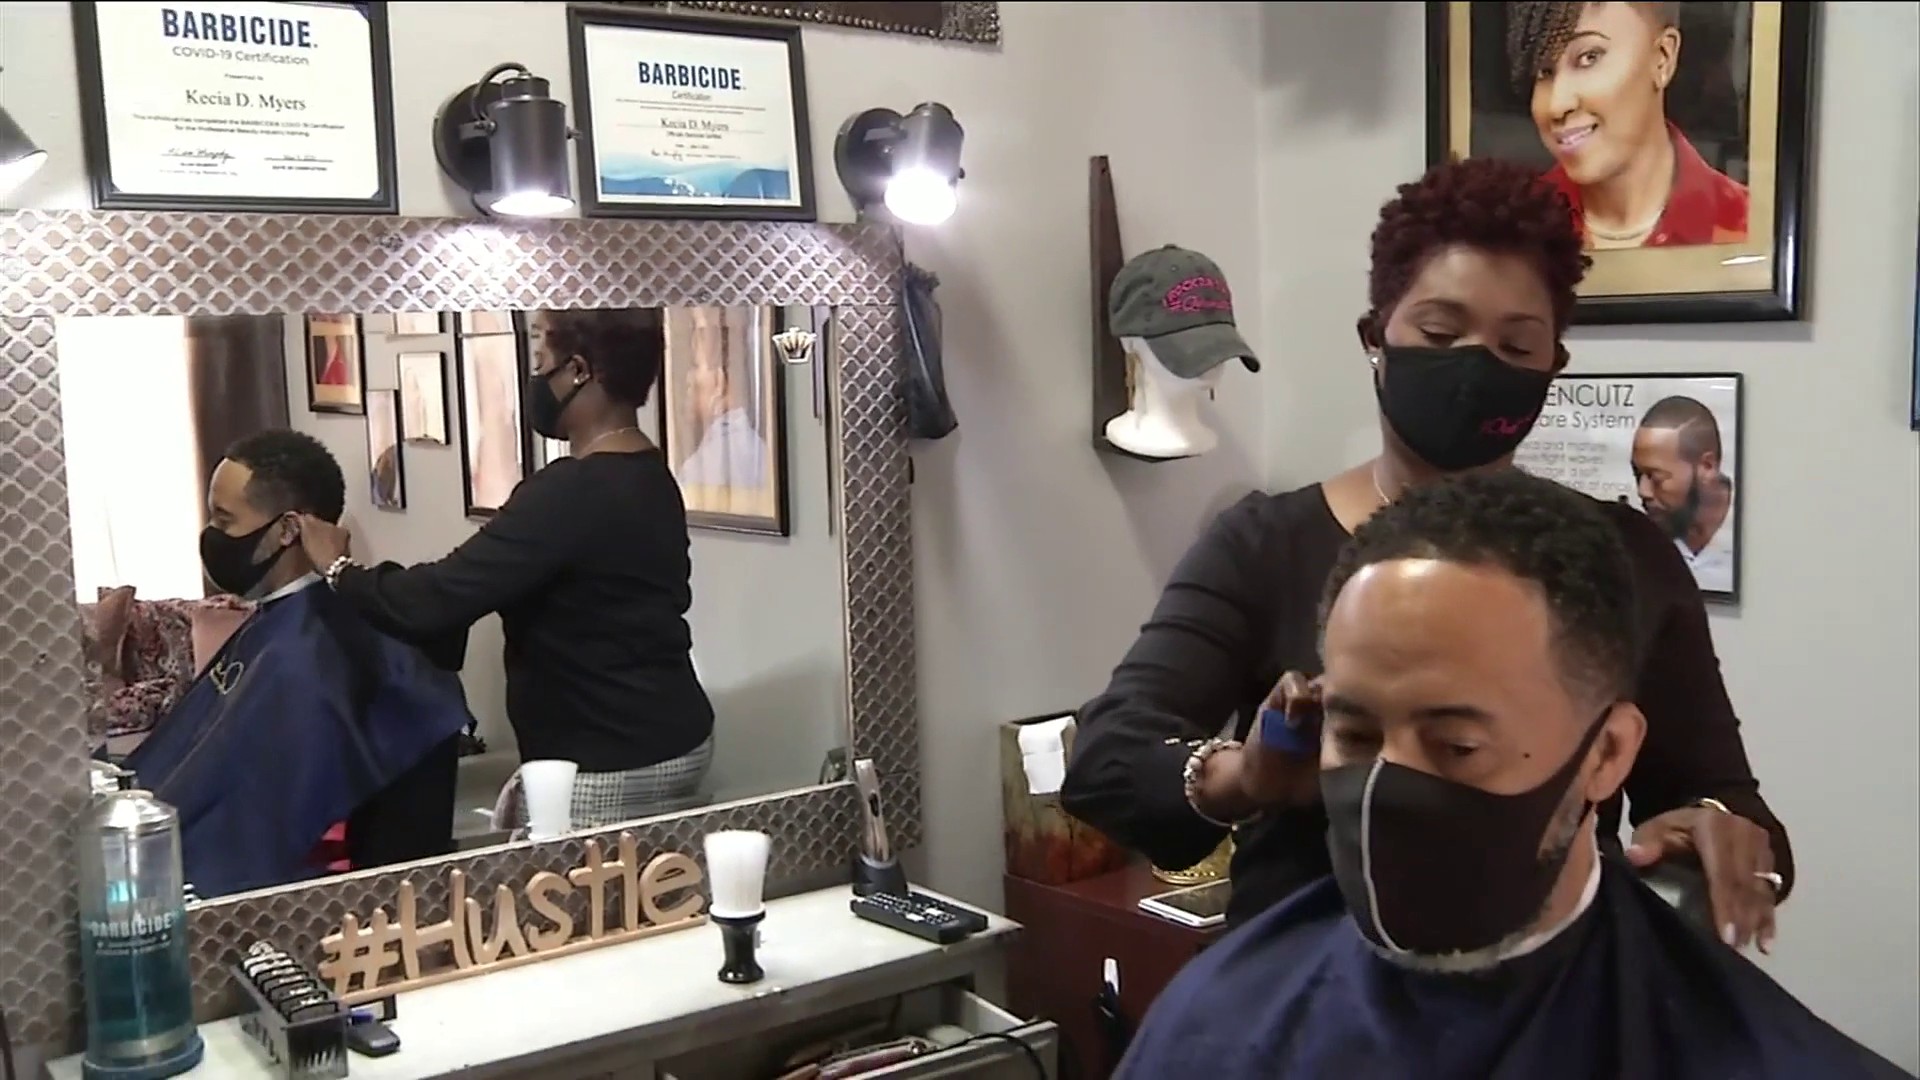 The Hustle Barbershop Queens